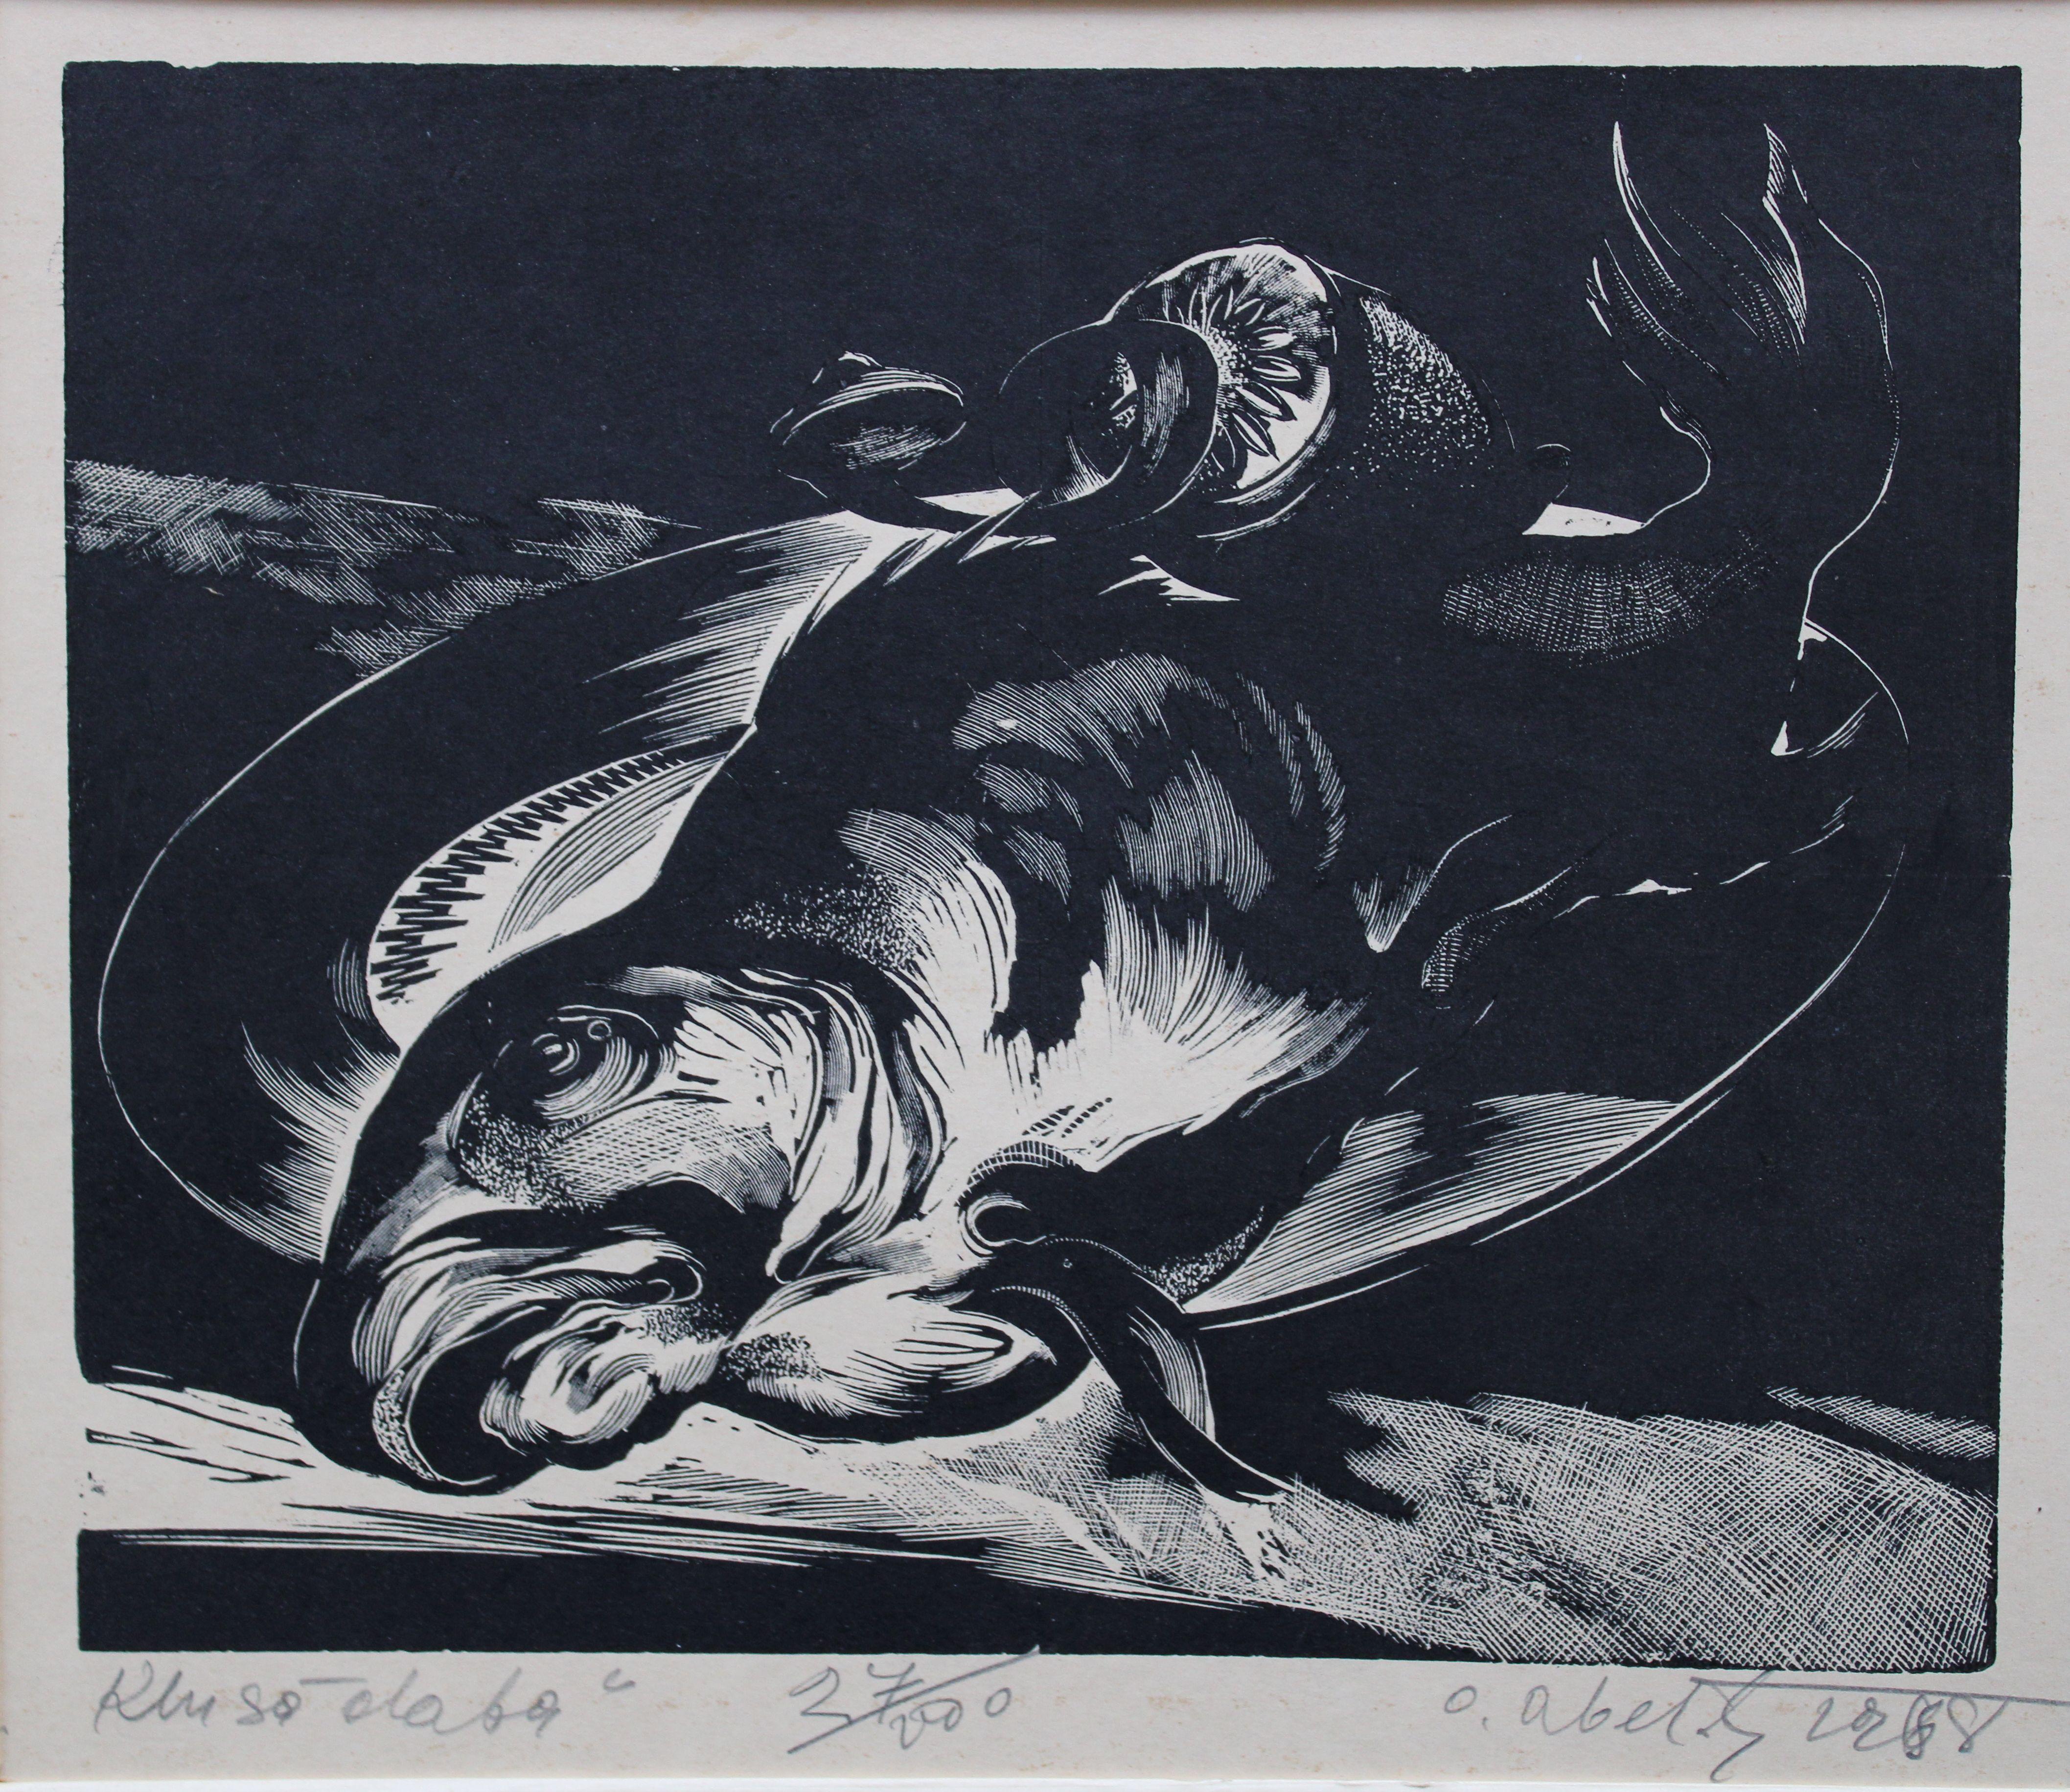 Nature morte 13/100. Papier, linogravure, 5/100, 22 x 25 cm, 1967 - Print de Olgerts Abelite